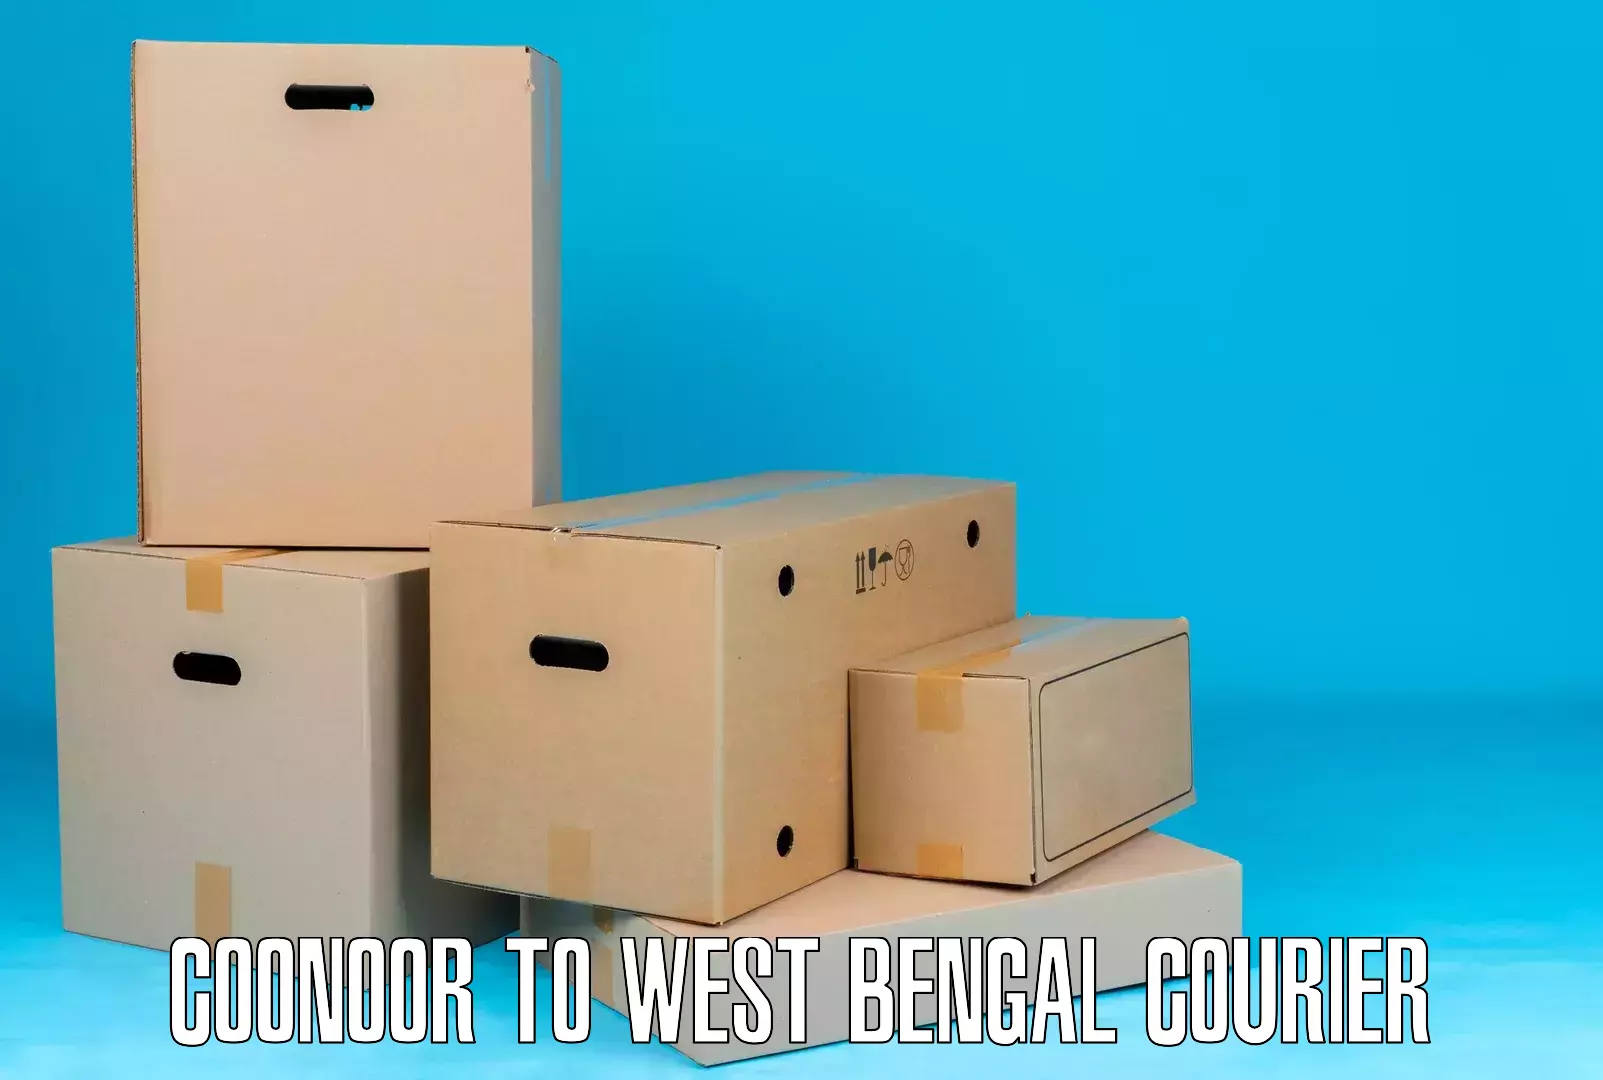 Professional parcel services Coonoor to Jalpaiguri